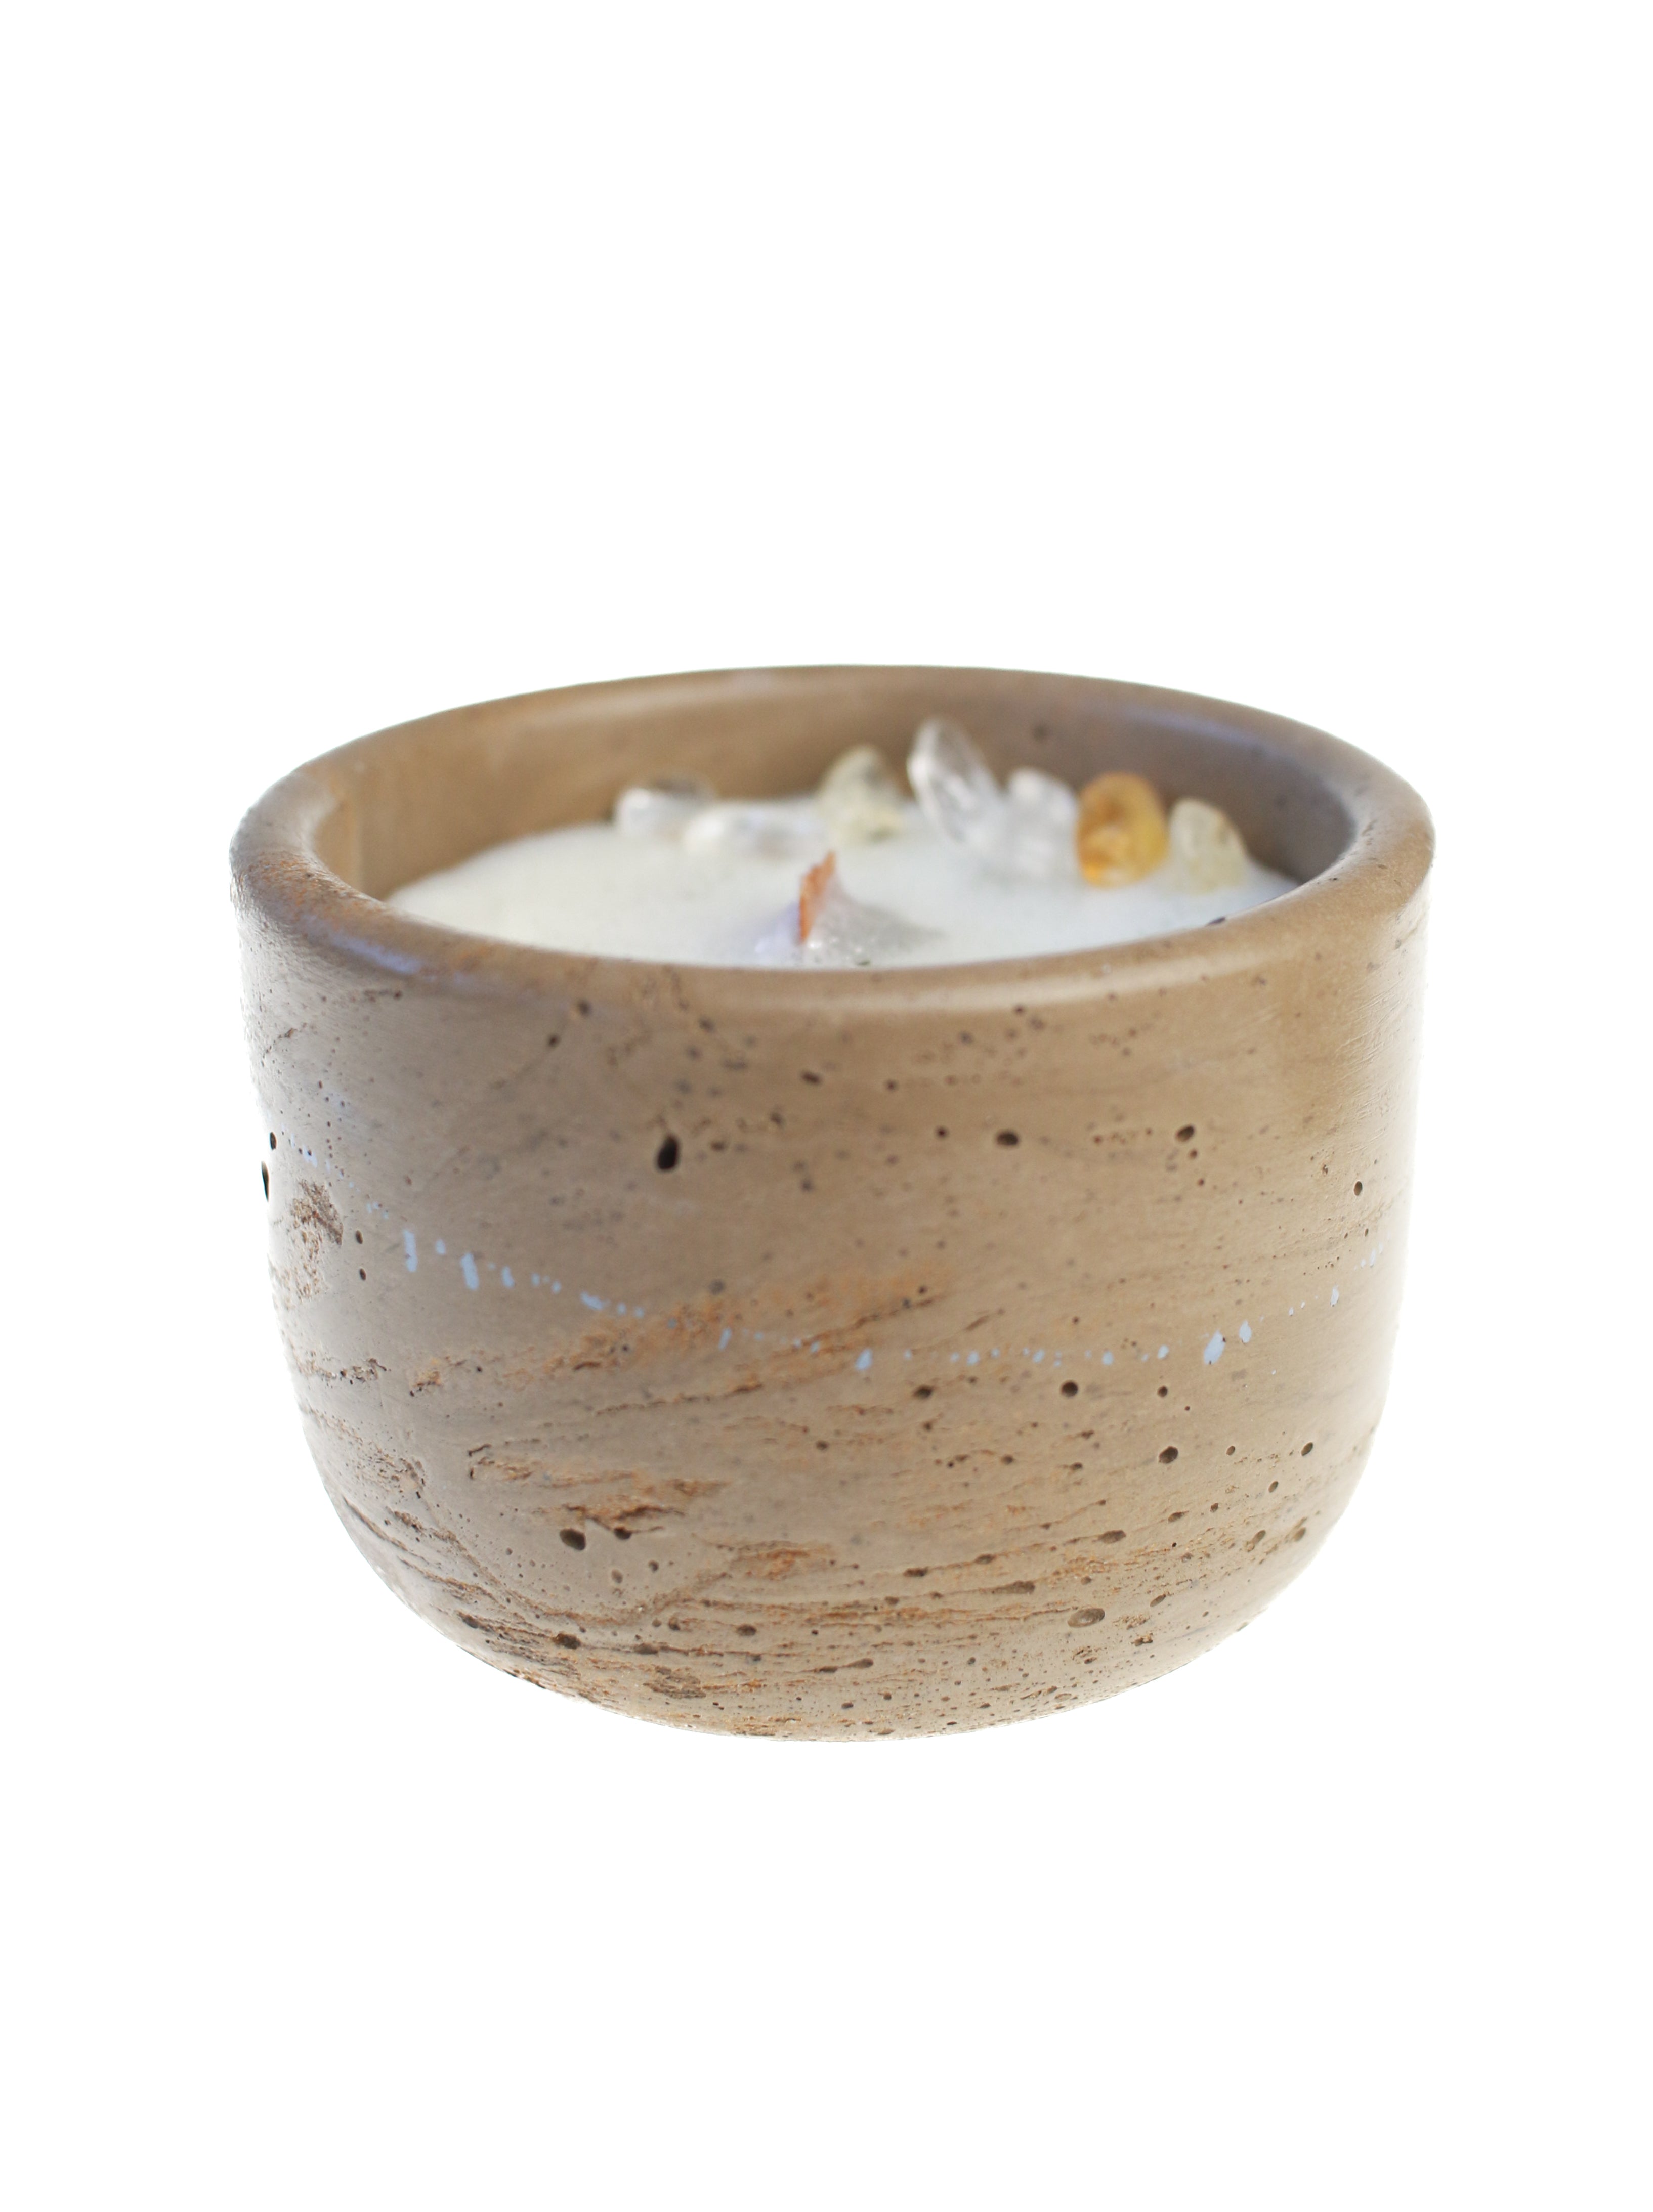 Cinnamon Chai Candle in Handmade Concrete Pot